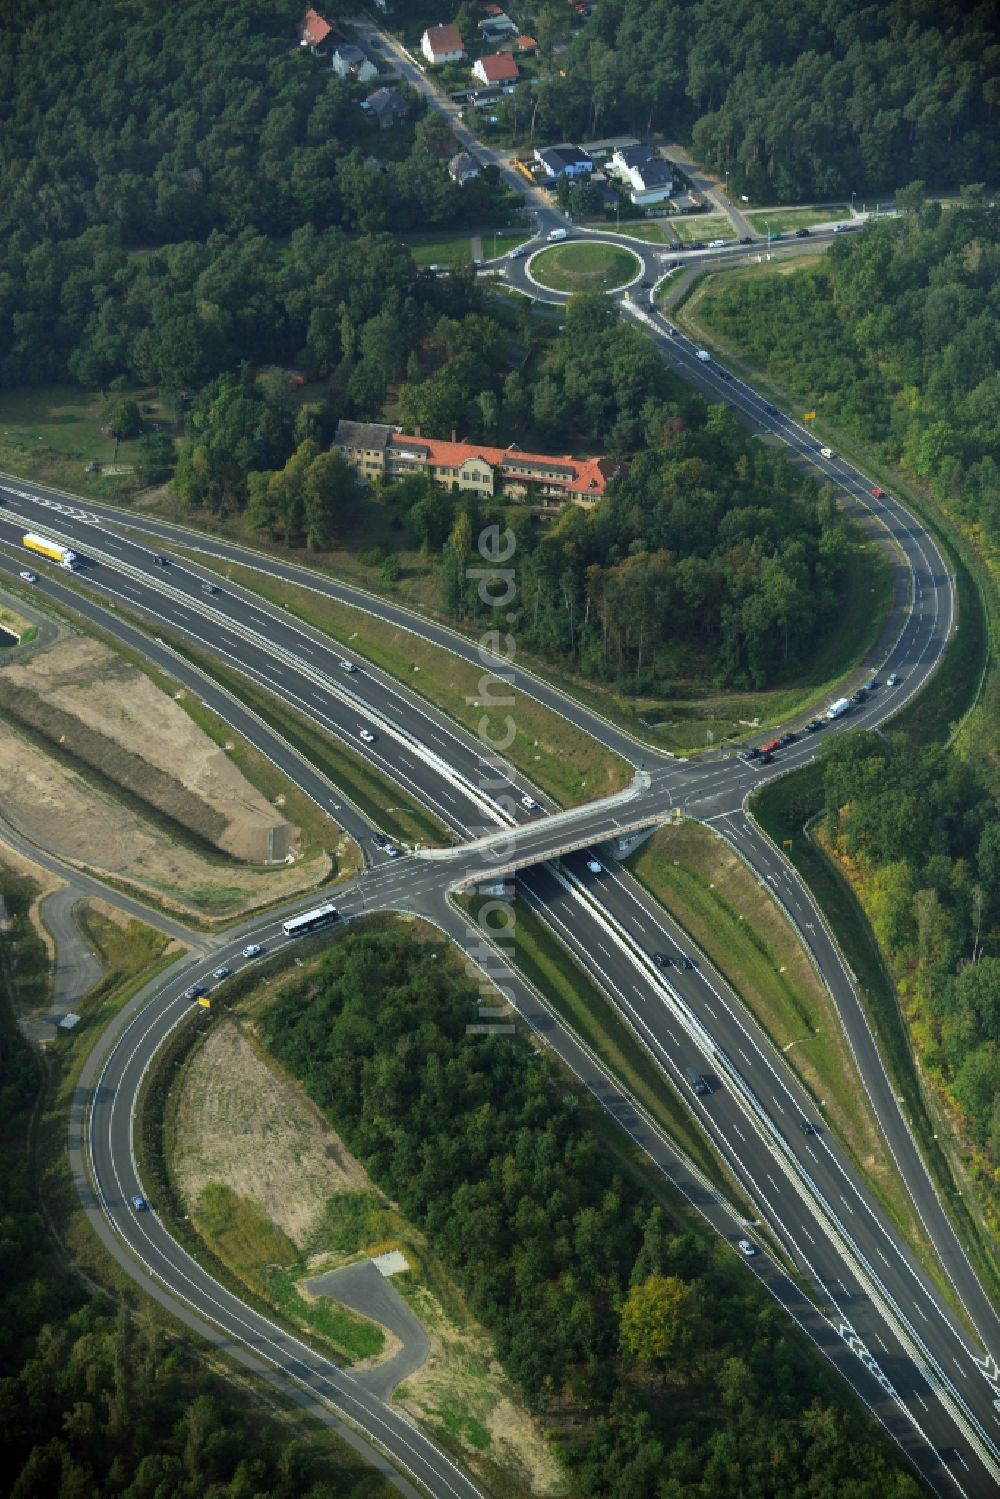 Luftbild Stahnsdorf OT Güterfelde - Ausbau und Umbau der Landesstraße L40 zur Ortsumgehung Güterfelde in Brandenburg